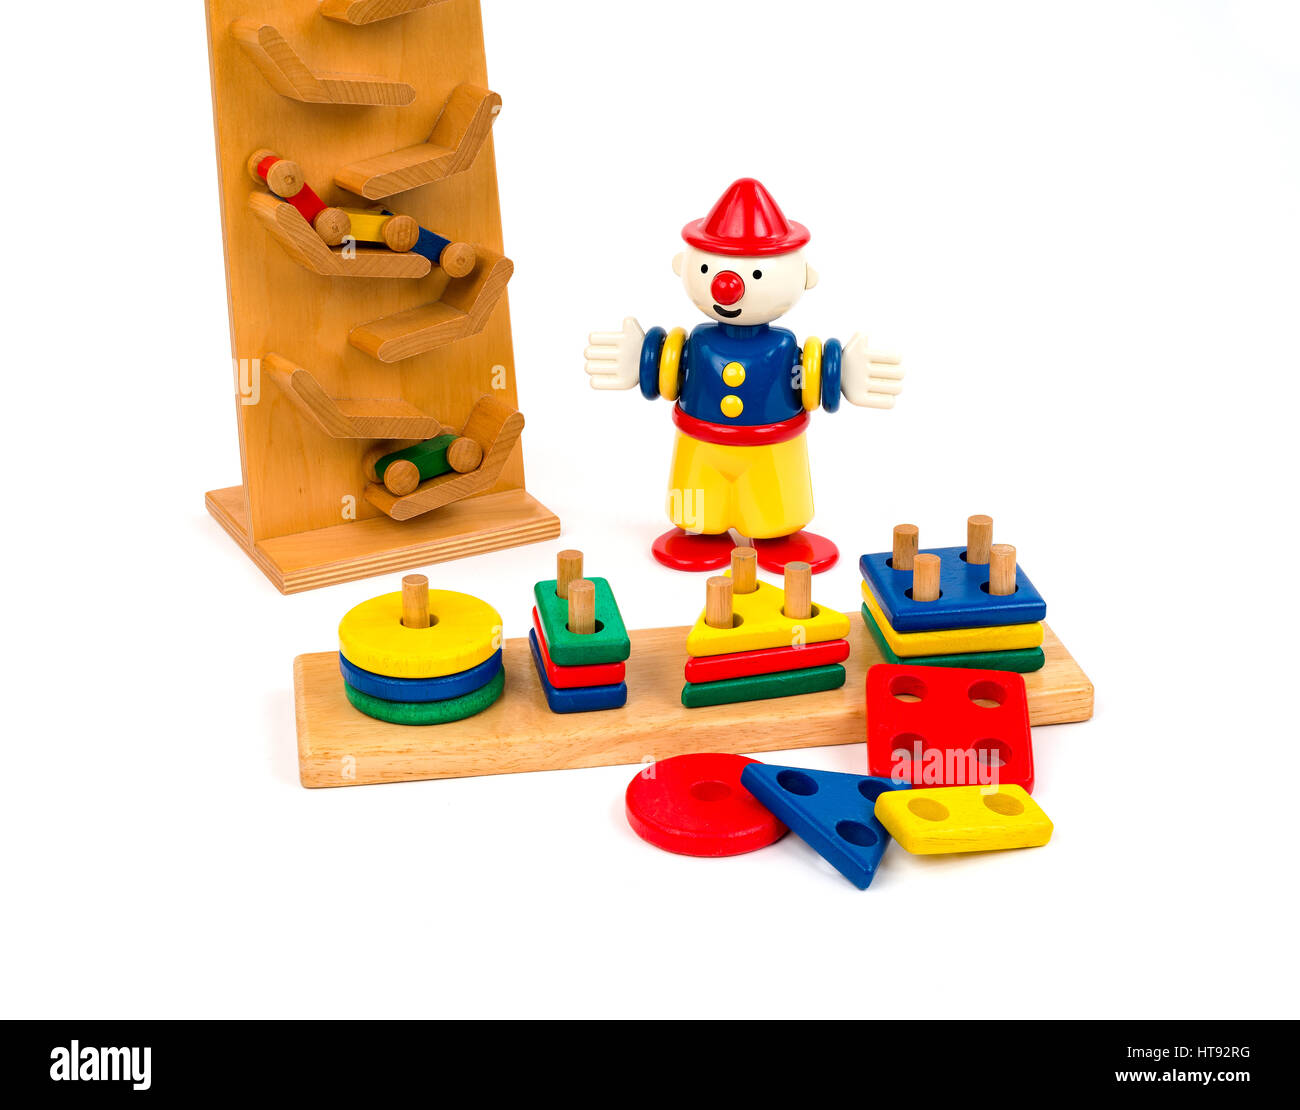 Groupe des meubles anciens en bois jouets éducatifs pour enfants dans des couleurs primaires. Banque D'Images